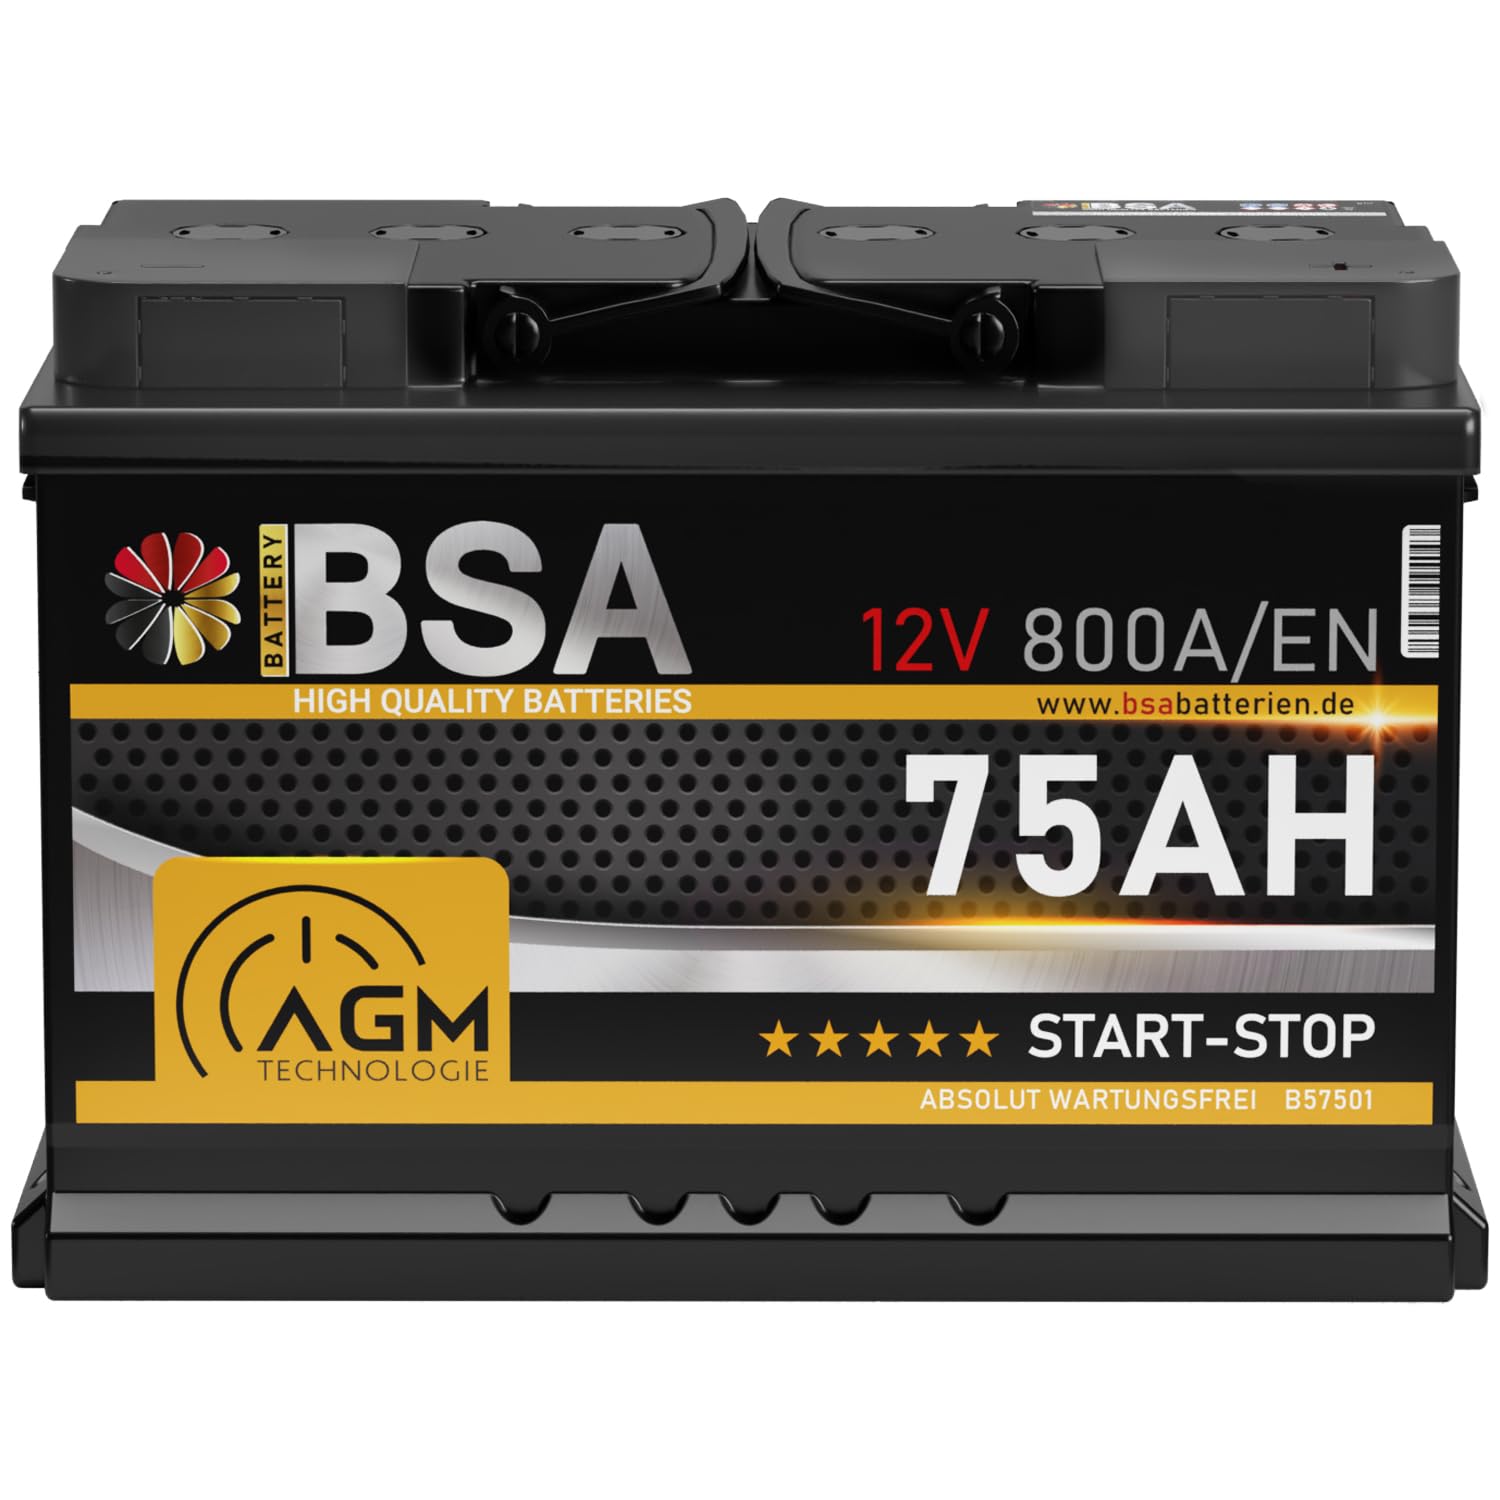 BSA AGM Batterie 75Ah 12V 800A/EN Start-Stop Batterie Autobatterie VRLA statt 70Ah von BSA BATTERY HIGH QUALITY BATTERIES